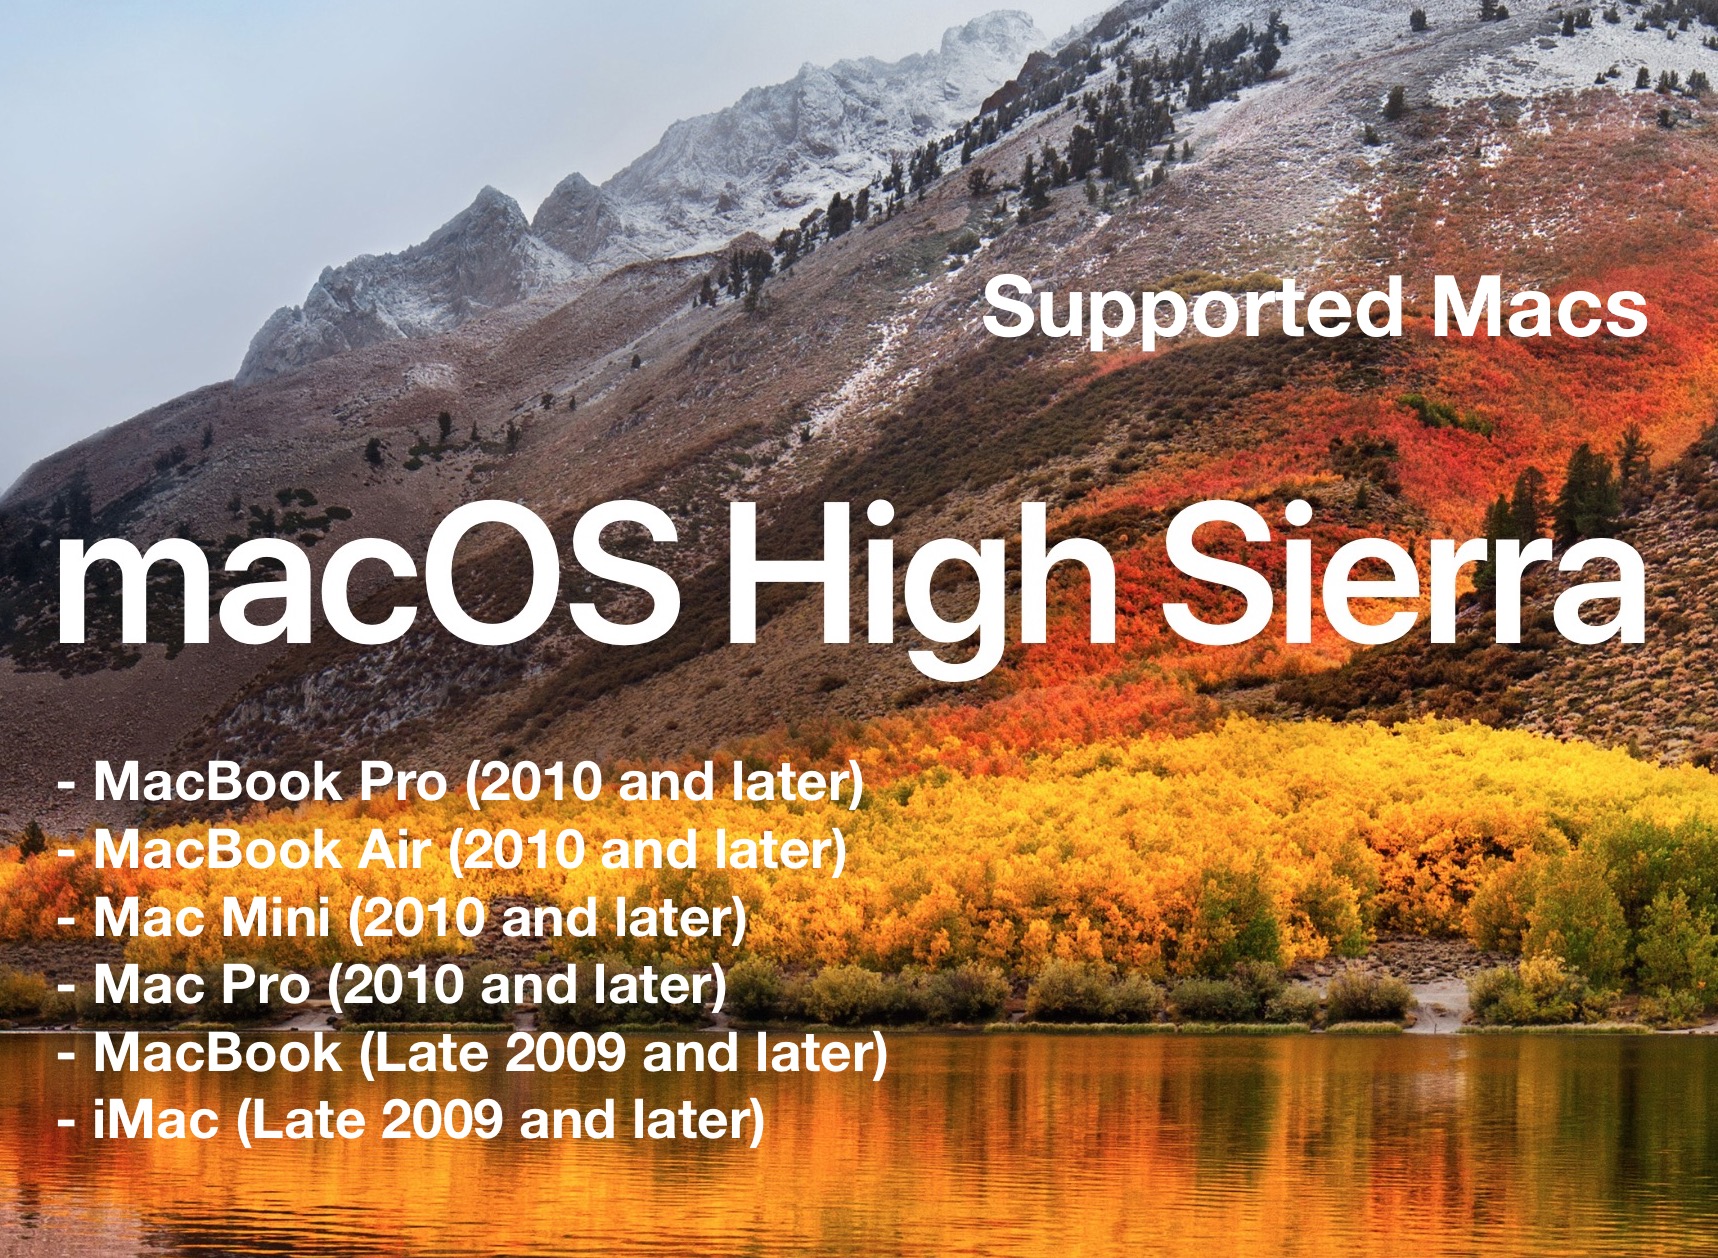 mac os high sierra for macbook air 2011